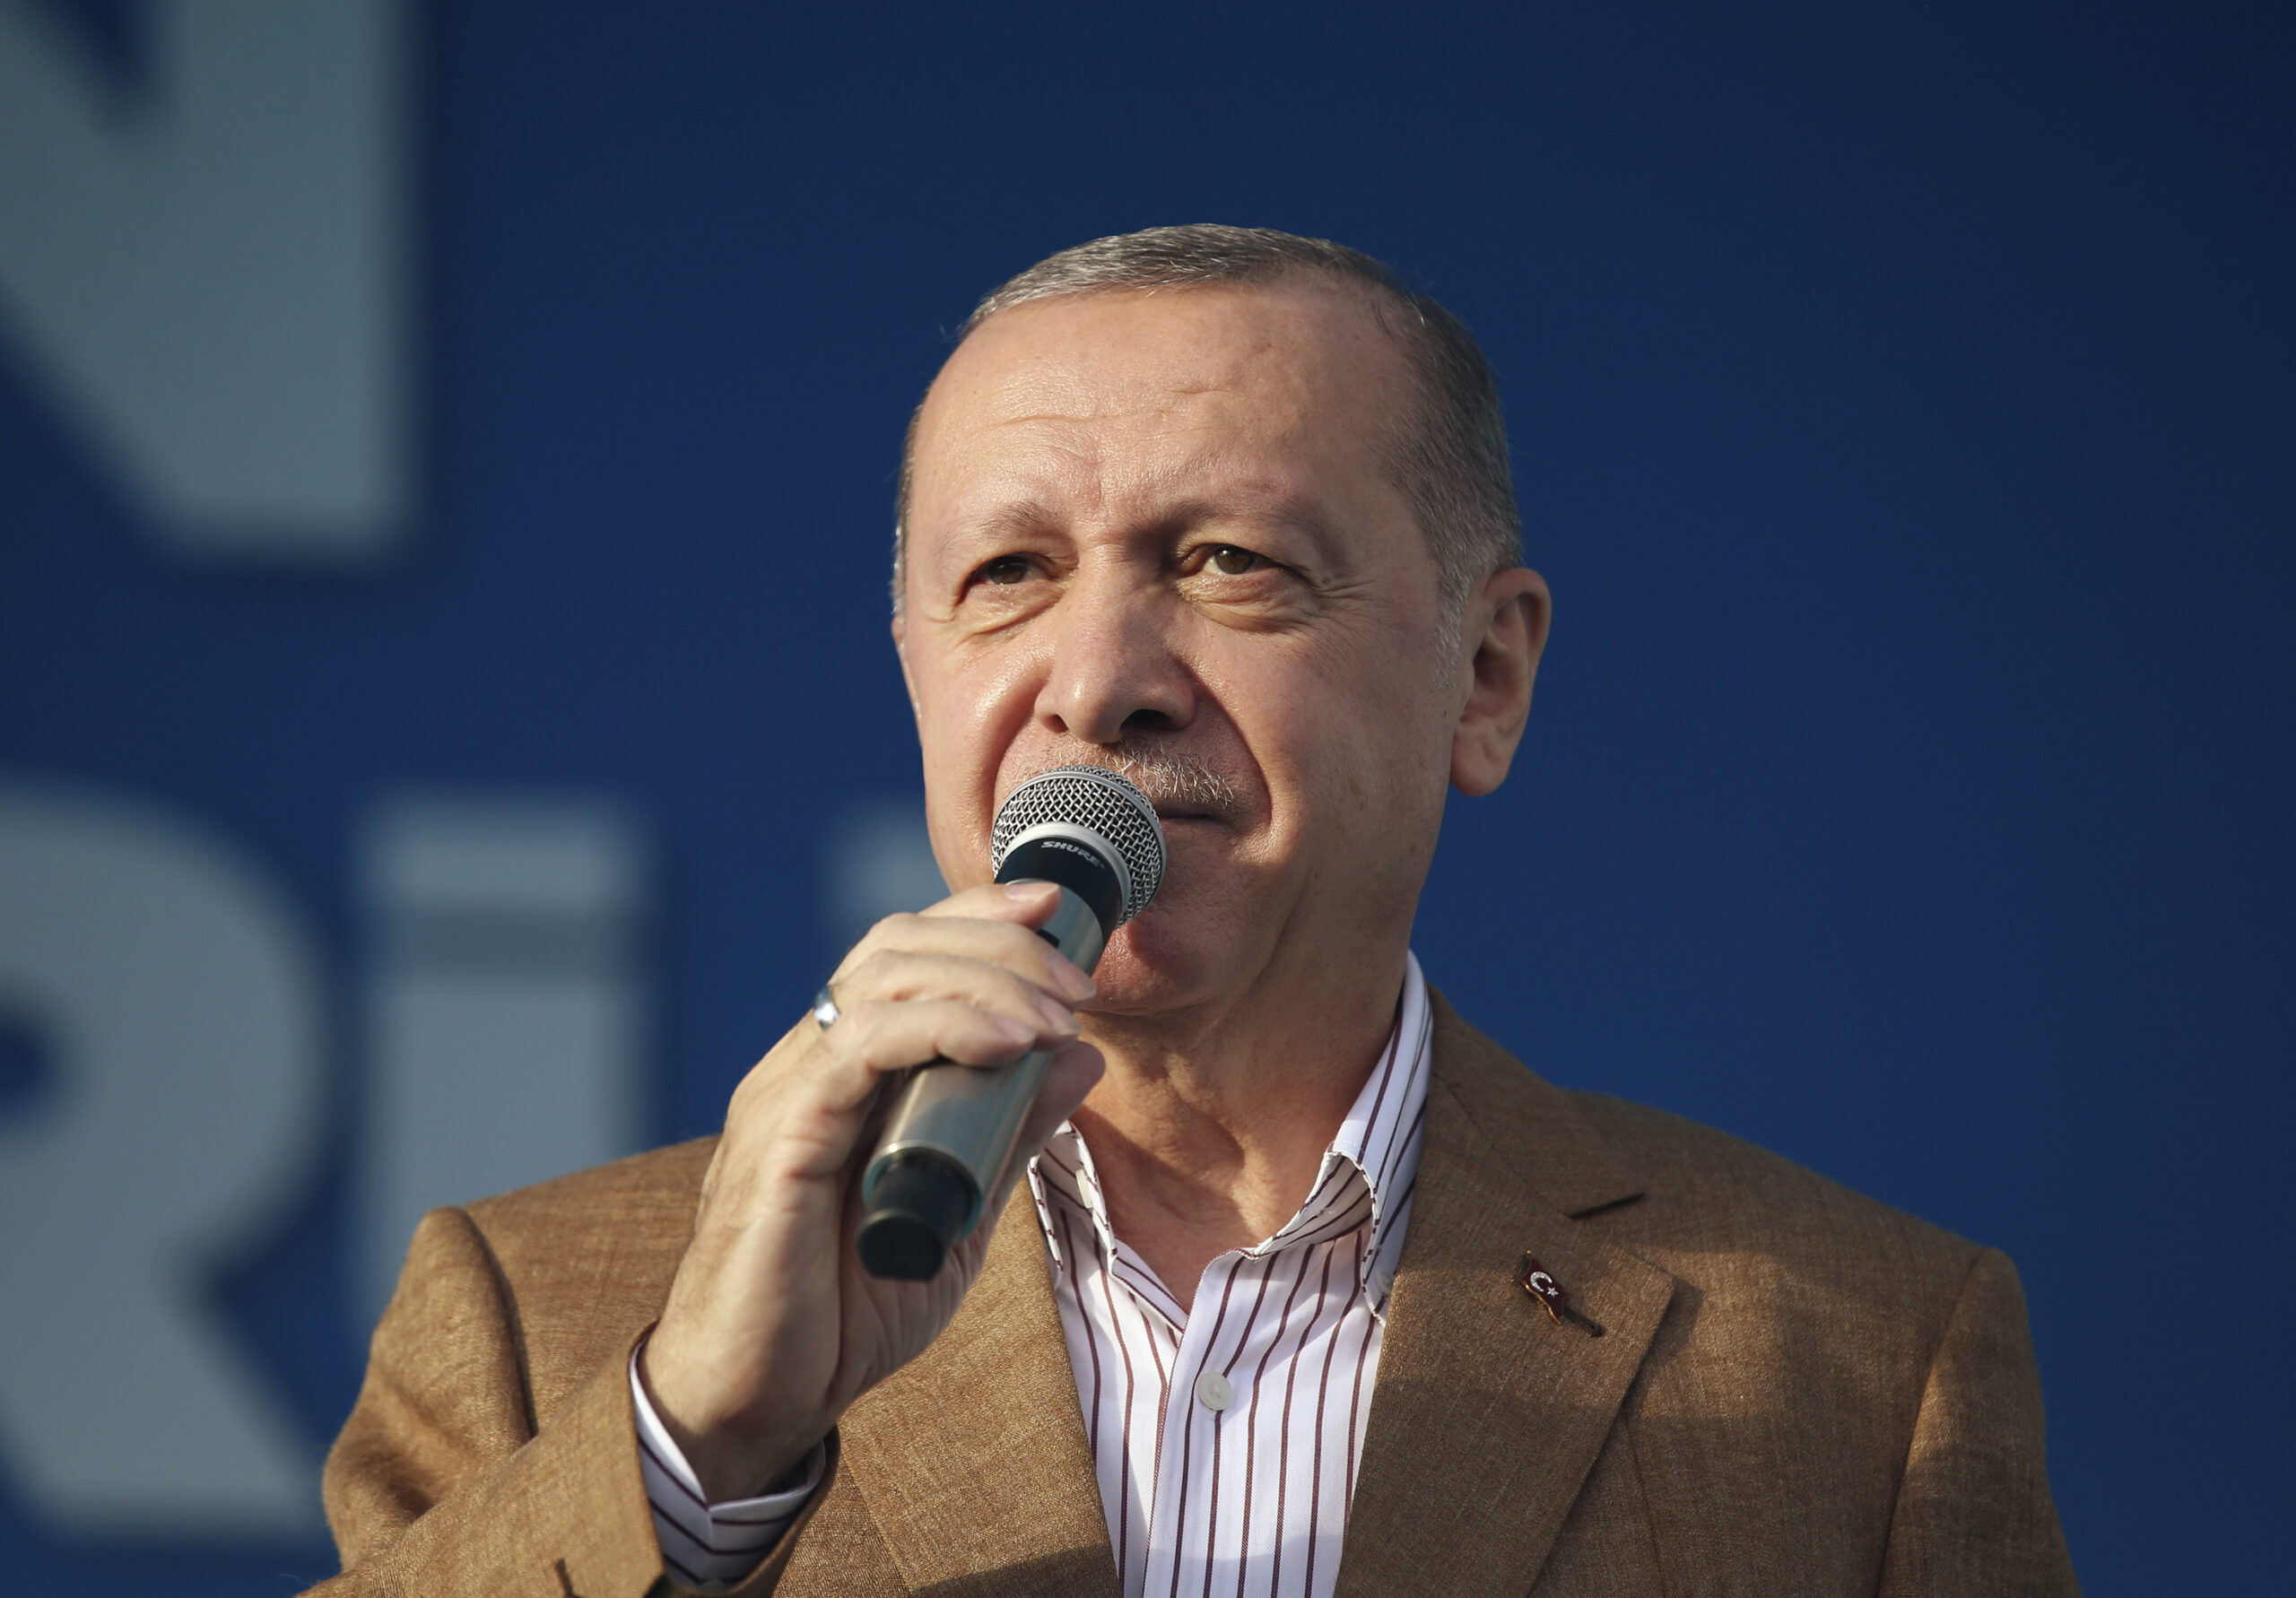 erdogan-turcima:-ne-kupujte-francusku-robu